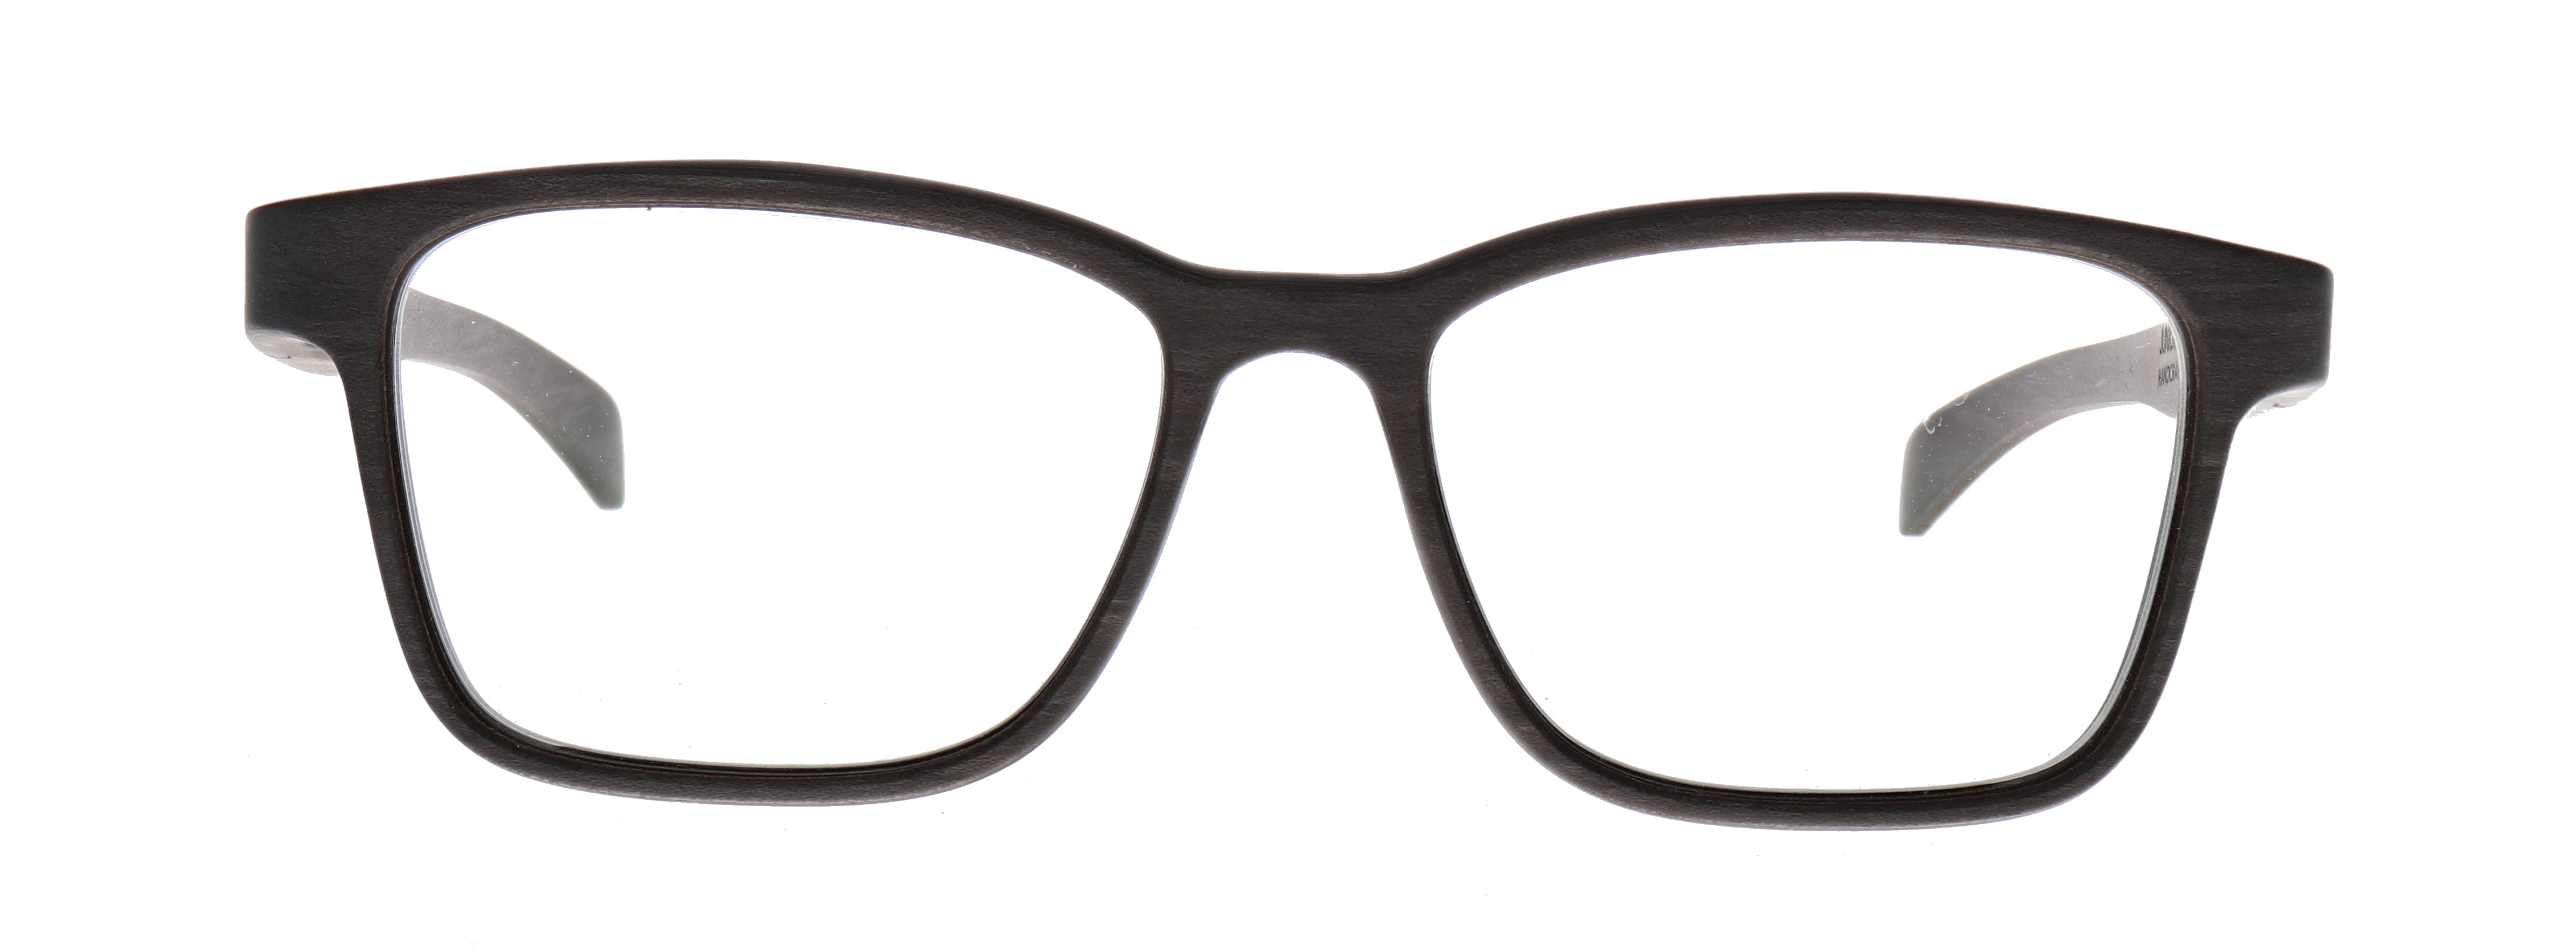 Rolf Spectacles Junior